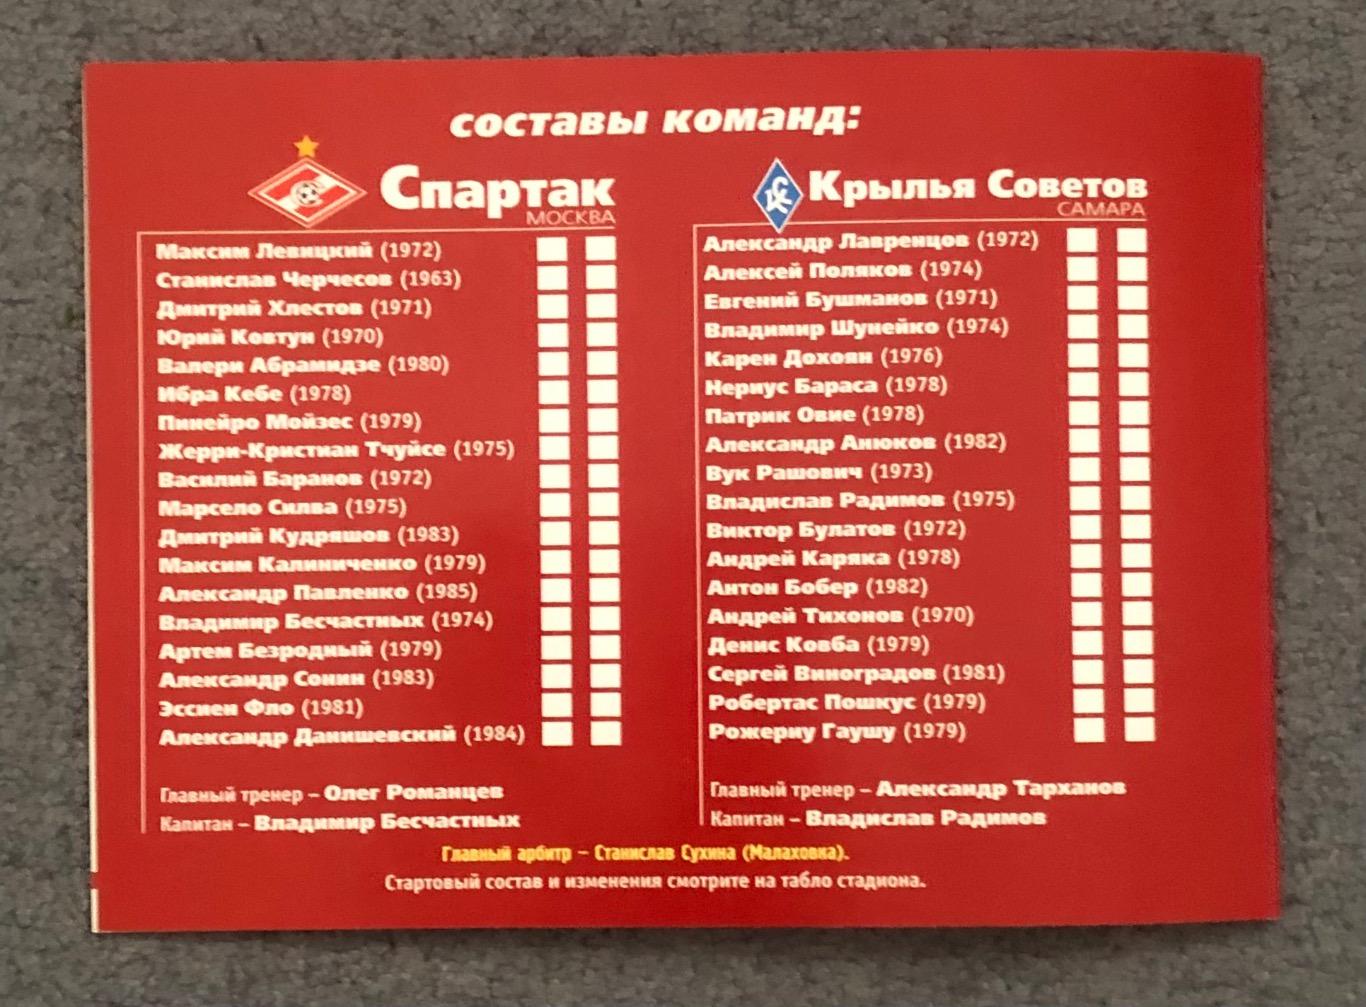 Спартак Москва - Крылья Советов Самара, 06.10.2002 7